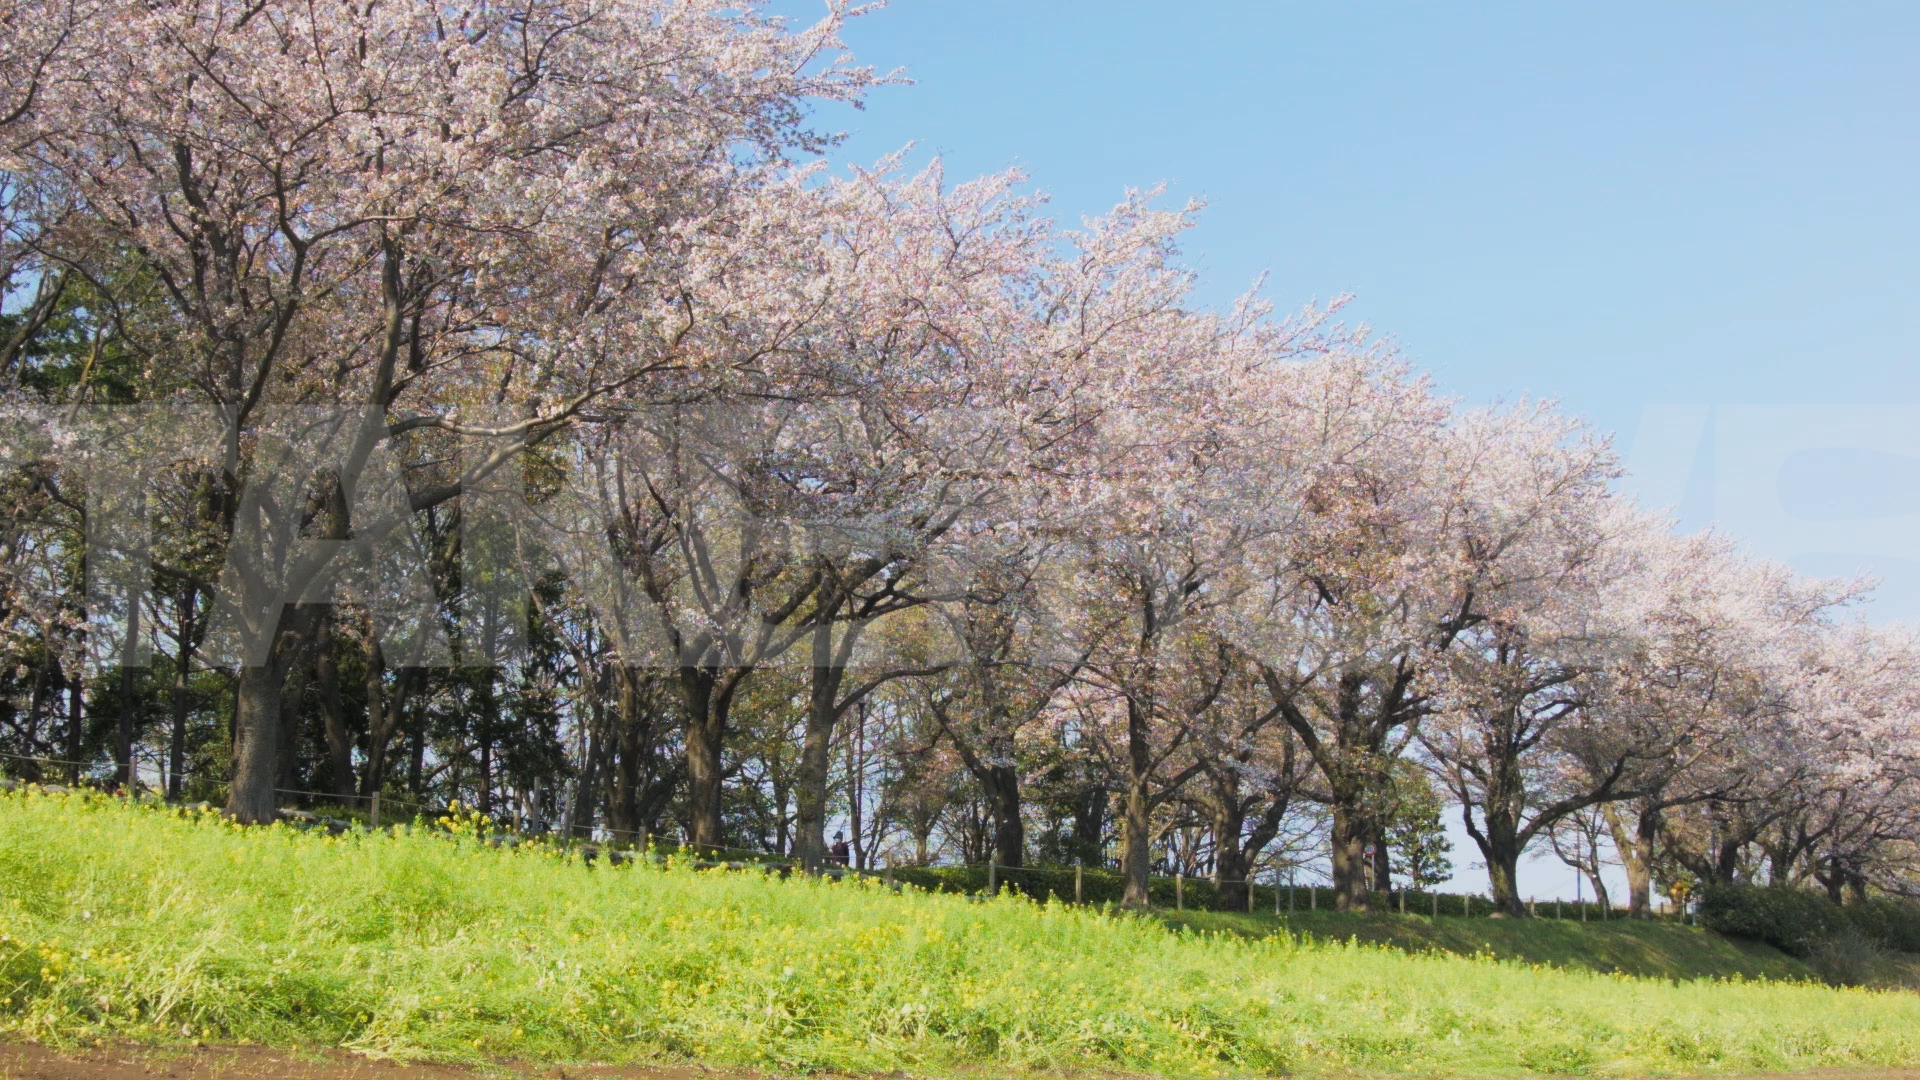 動画素材 M0159 桜並木と菜の花の組み合わせが美しい春の風景のhd動画素材 商用利用可能で無料でダウンロードできる フリー動画 写真 ｃｇ素材 のテイクムーヴ